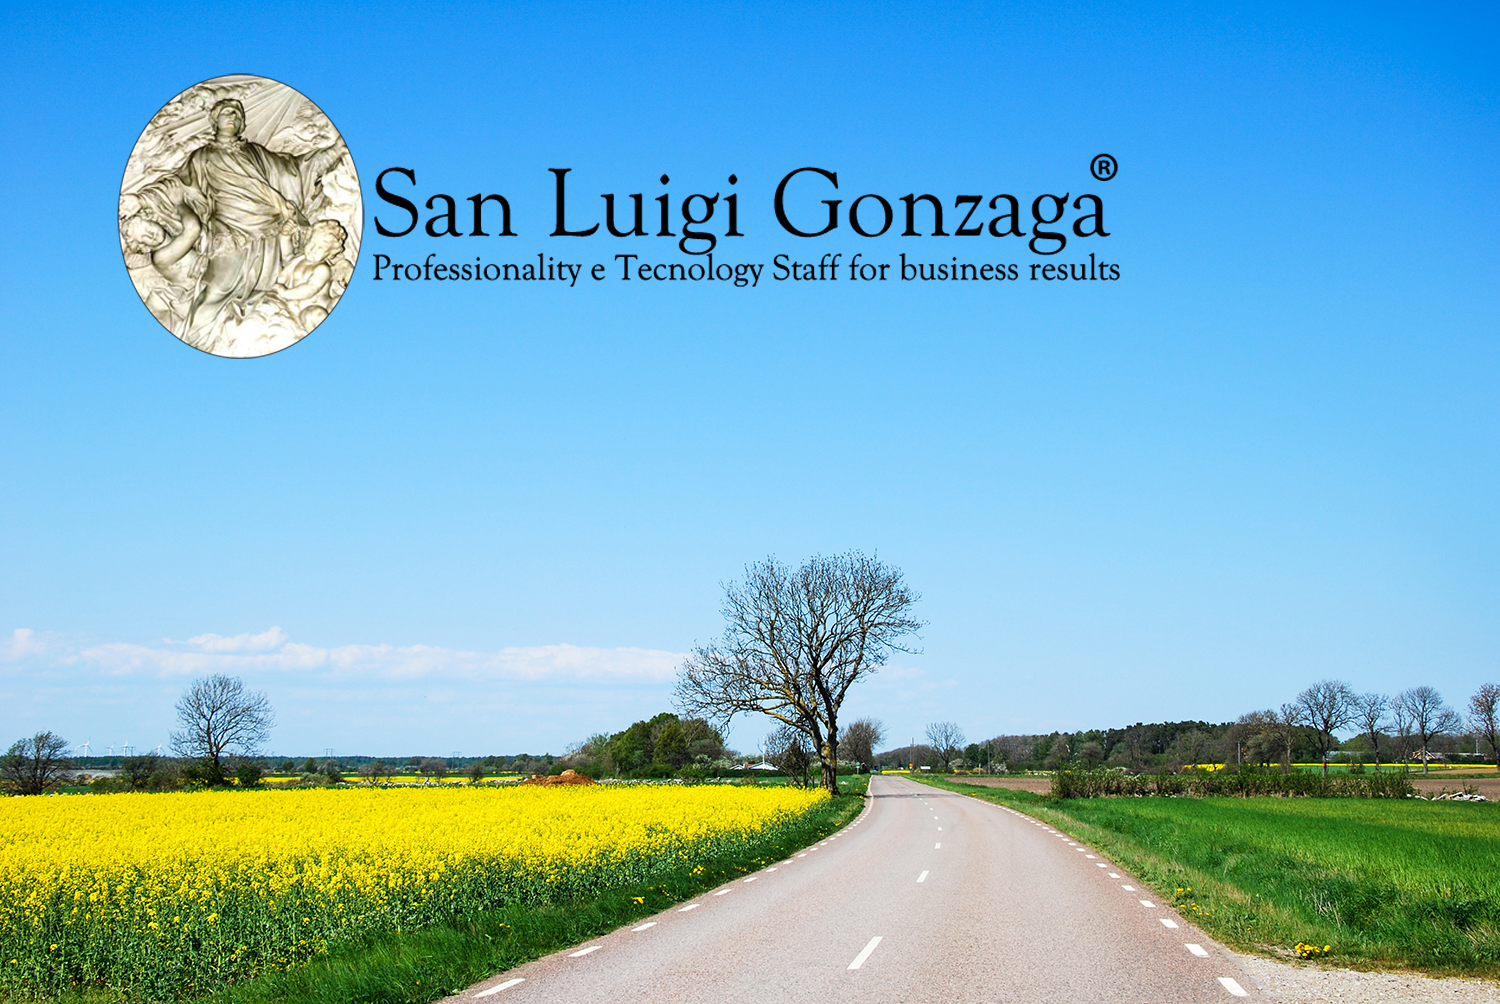 //www.sanluigigonzaga.eu/hyaluwellplus/wp-content/uploads/2021/11/San-Luigi-Gonzaga-Sostenibilita-ambientale.png